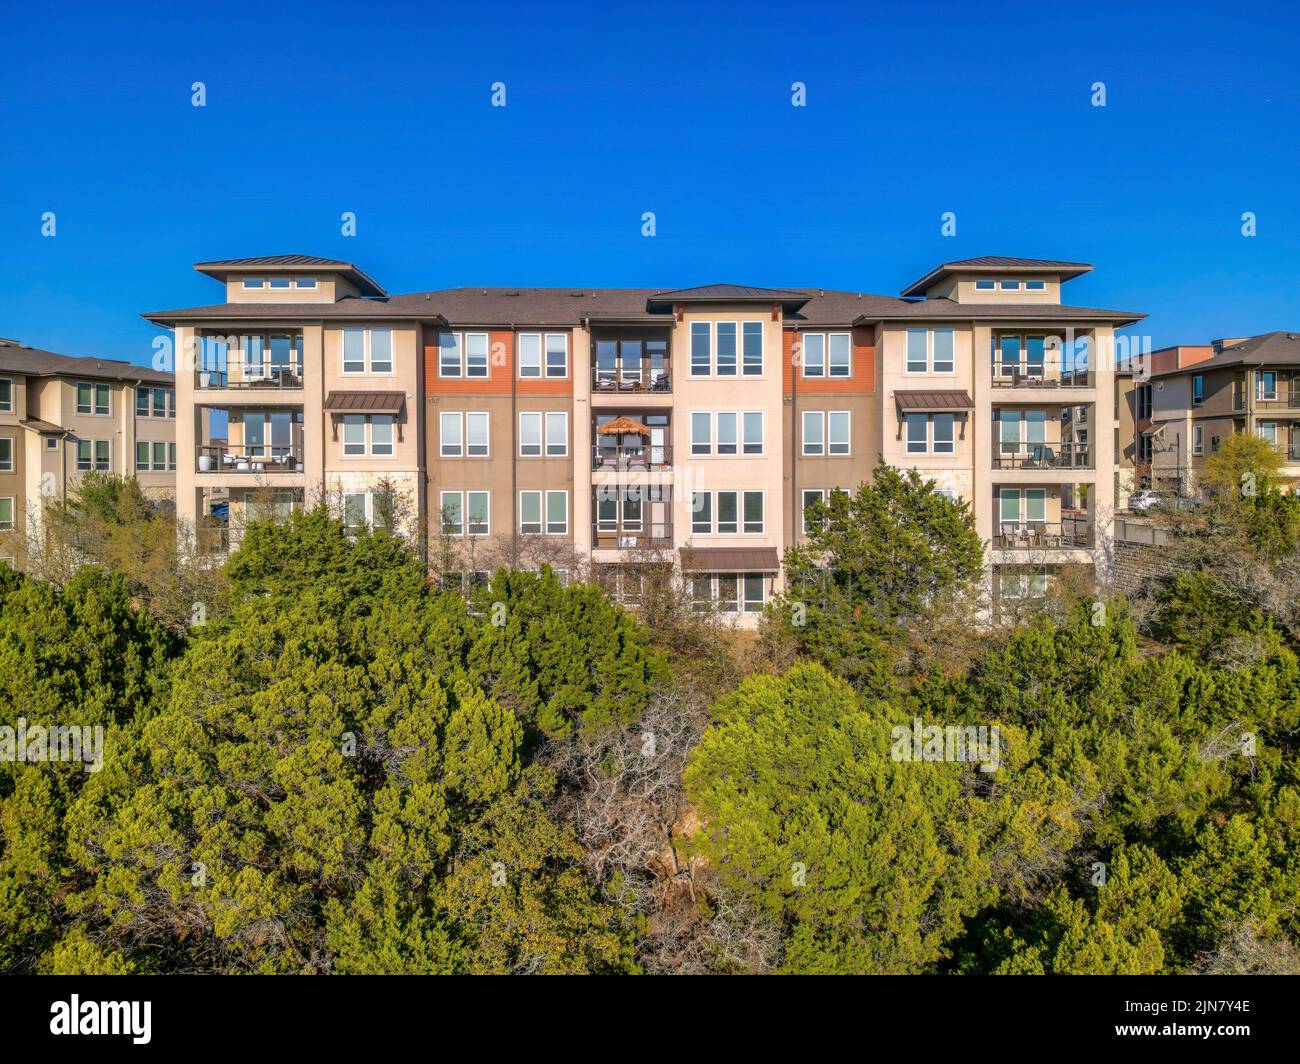 Austin, Texas- Apartmentgebäude mit Balkonen und Panoramafenstern auf einem Hang mit Bäumen Stockfoto